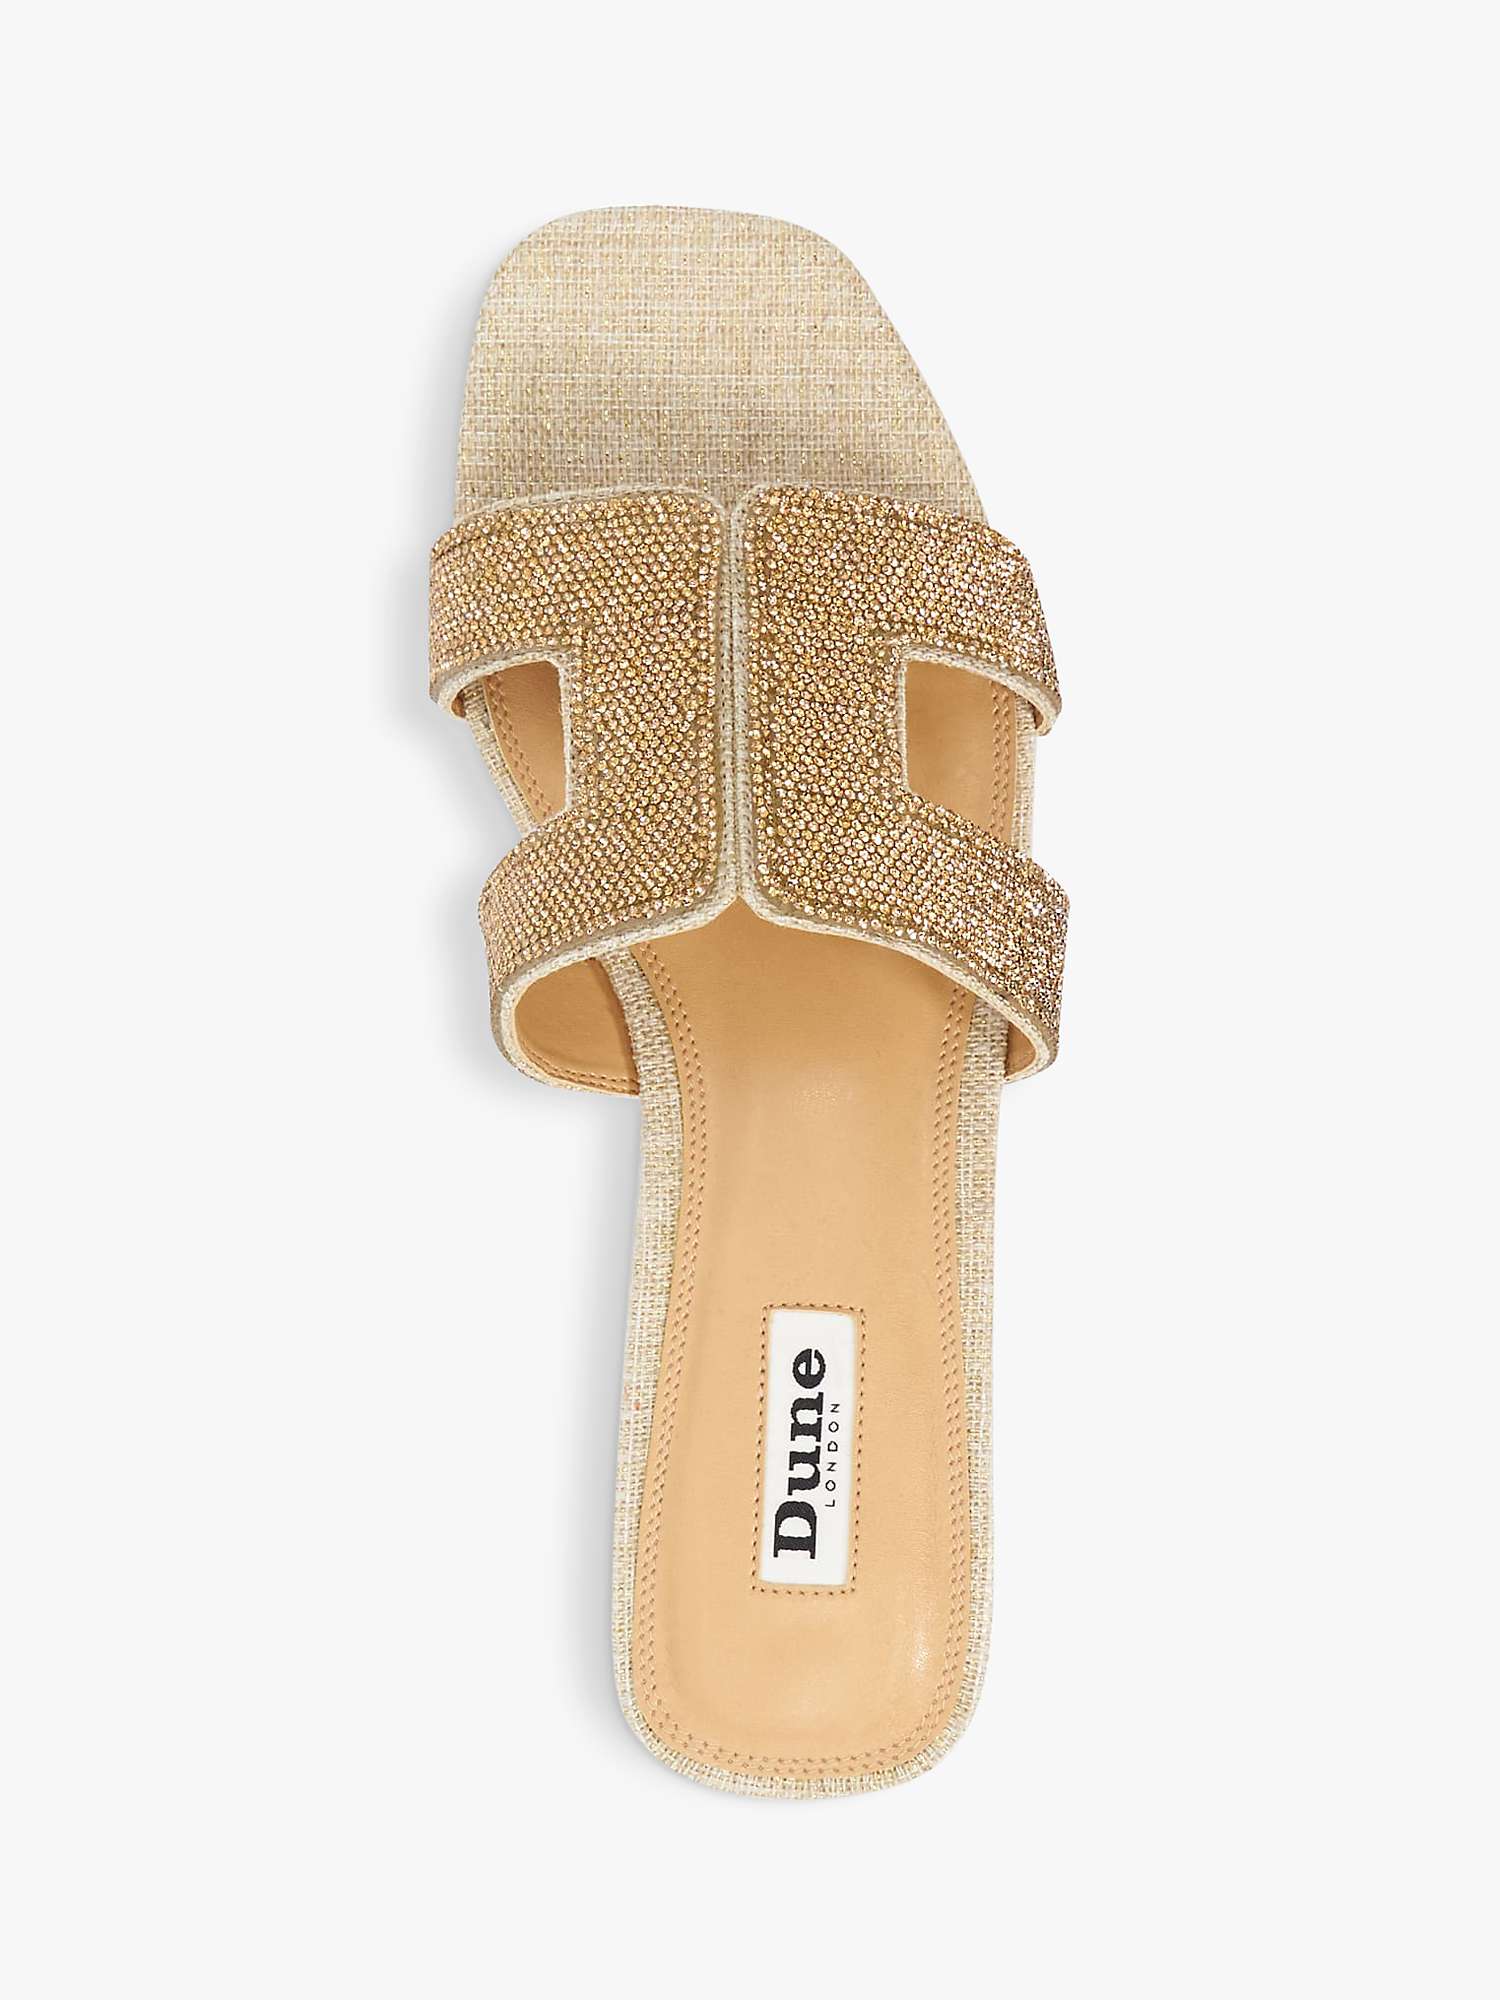 Buy Dune Loupe Crystal Embellished Fabric Slider Sandals, Gold Online at johnlewis.com